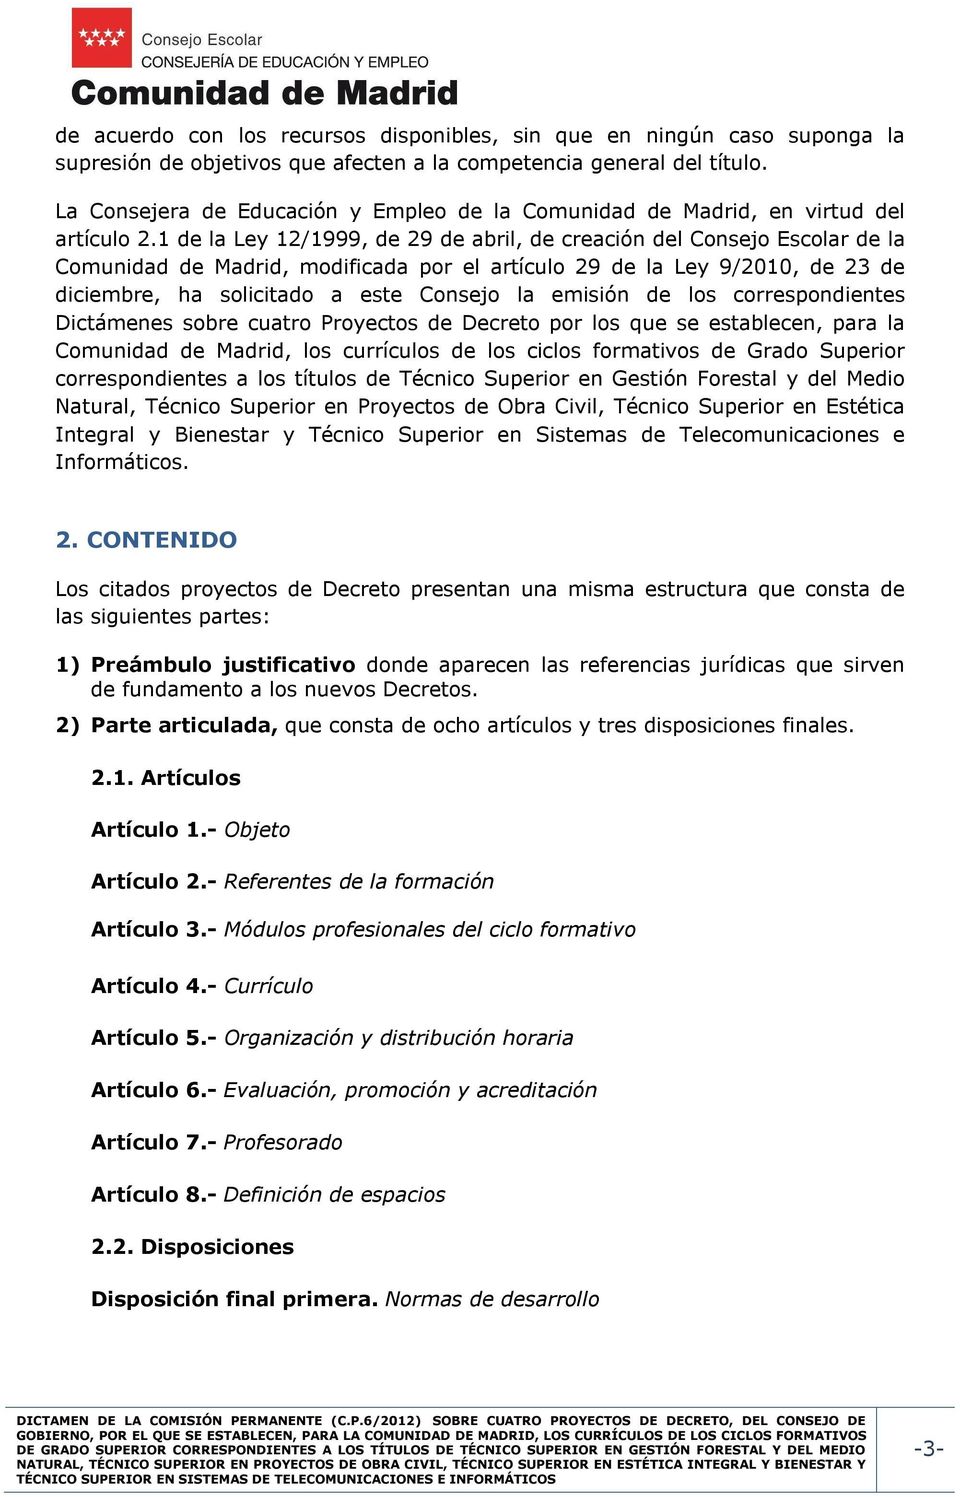 1 de la Ley 12/1999, de 29 de abril, de creación del Consejo Escolar de la Comunidad de Madrid, modificada por el artículo 29 de la Ley 9/2010, de 23 de diciembre, ha solicitado a este Consejo la